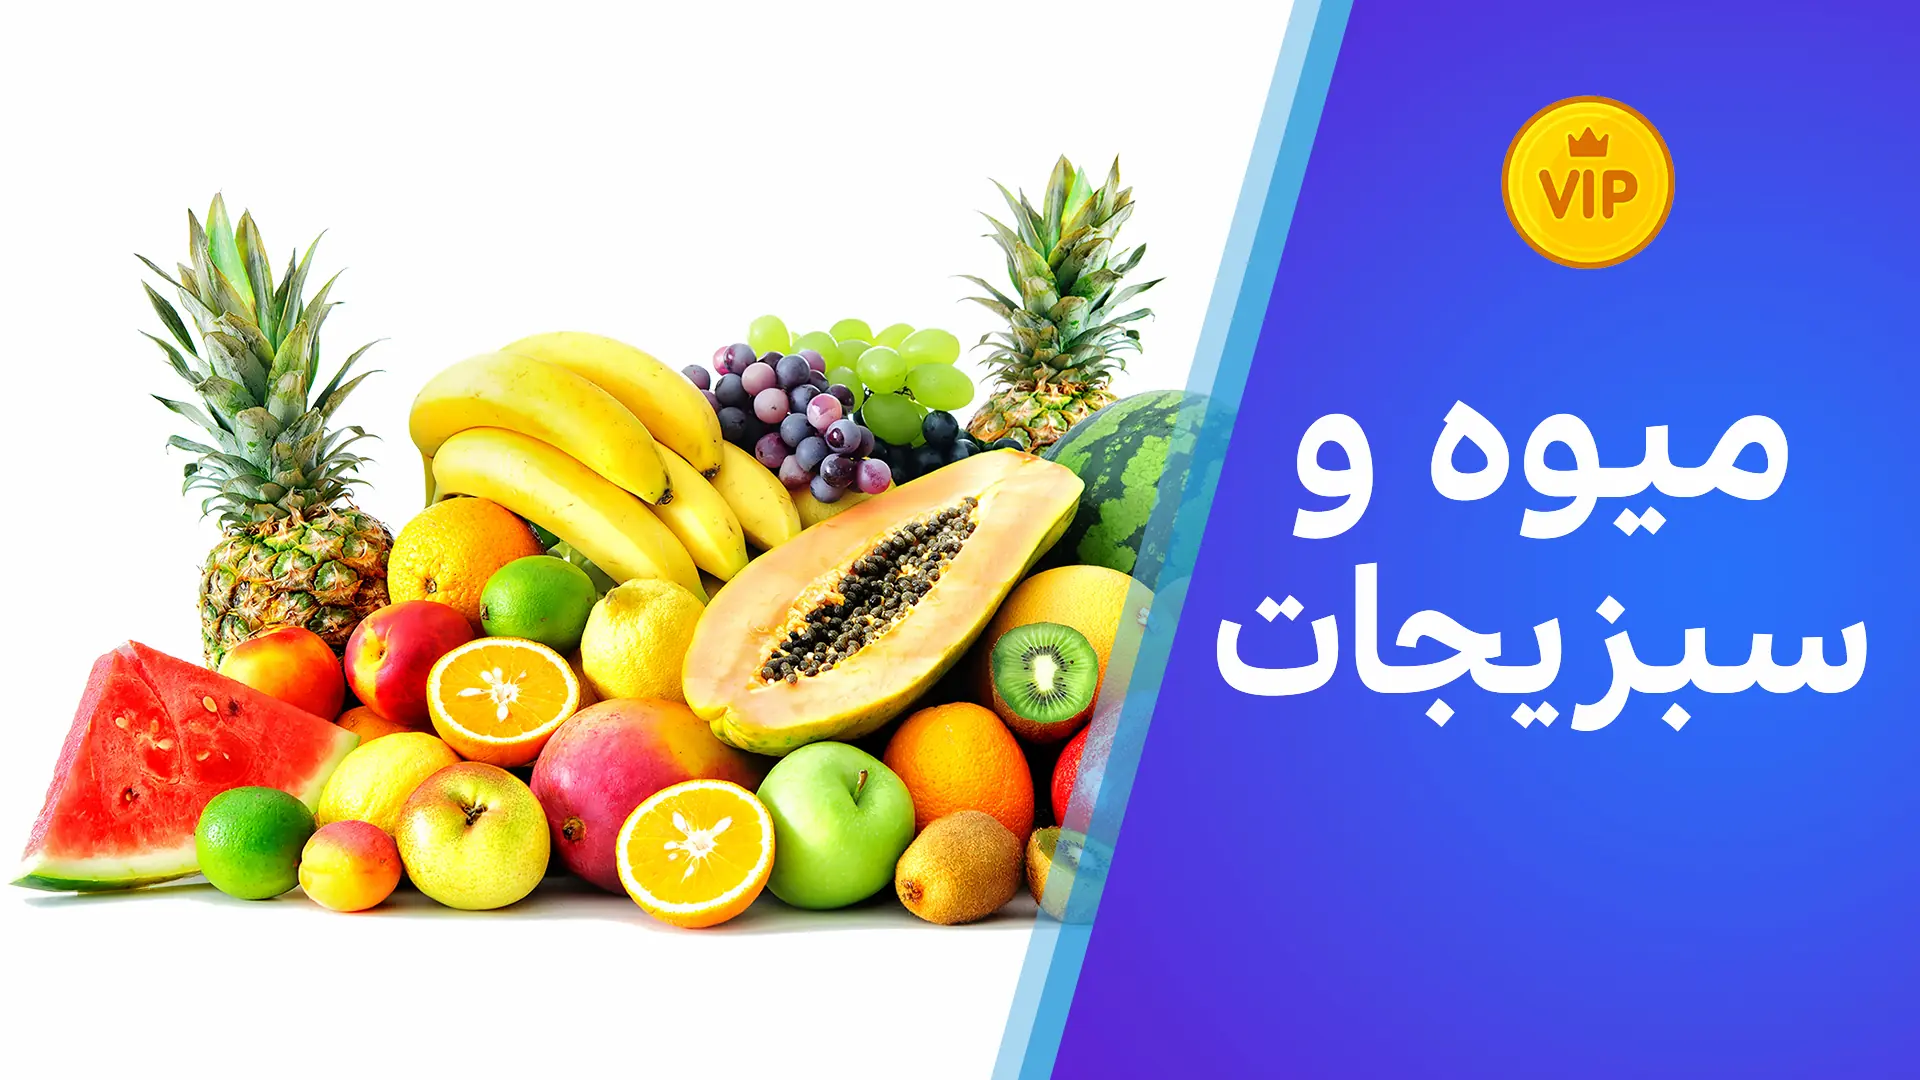 لغت/میوه و سبزیجات به لهجه شامی + صوت